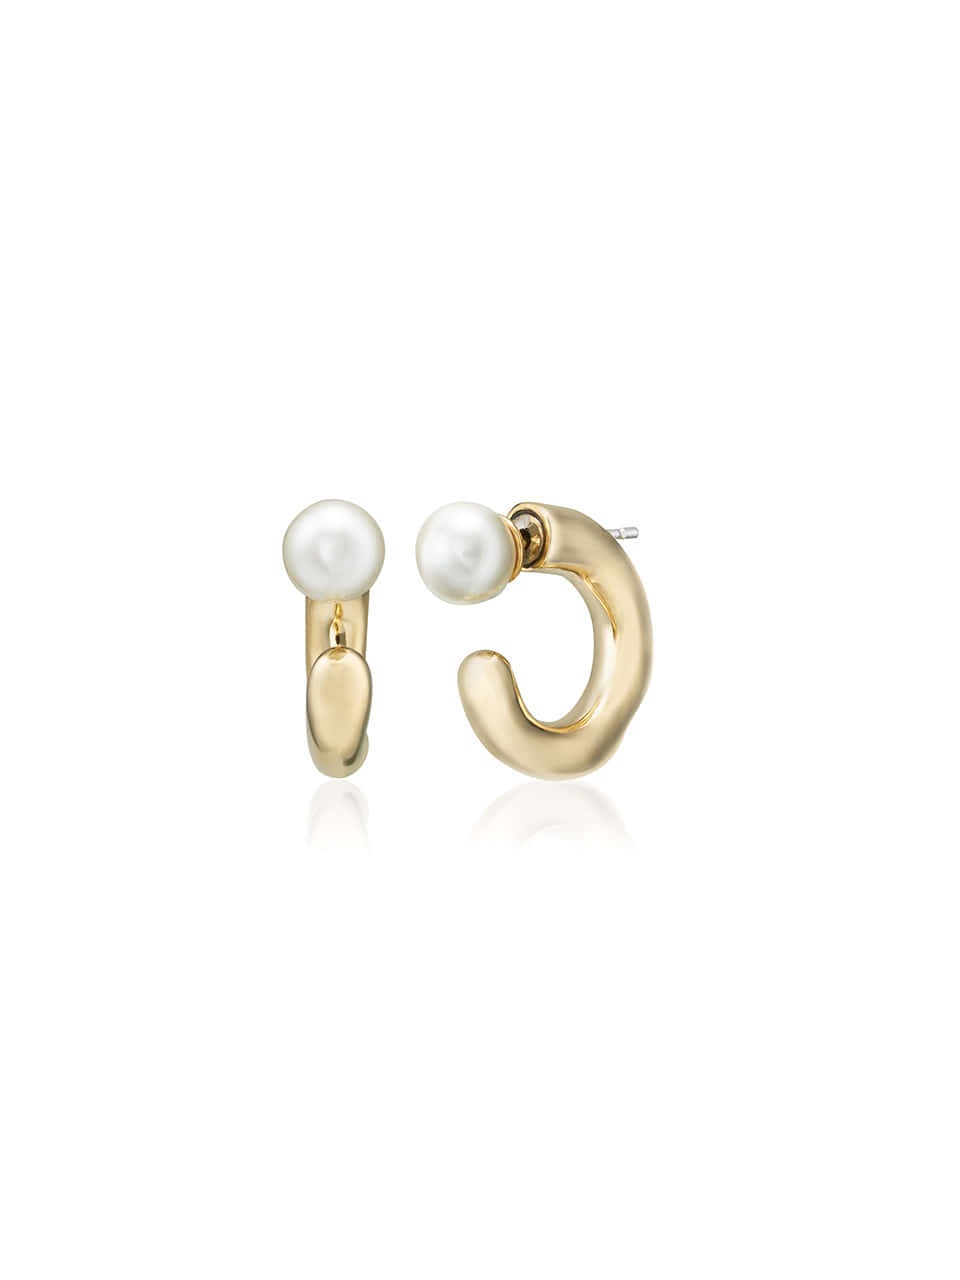 Melting Pearl Ring Earrings Gold